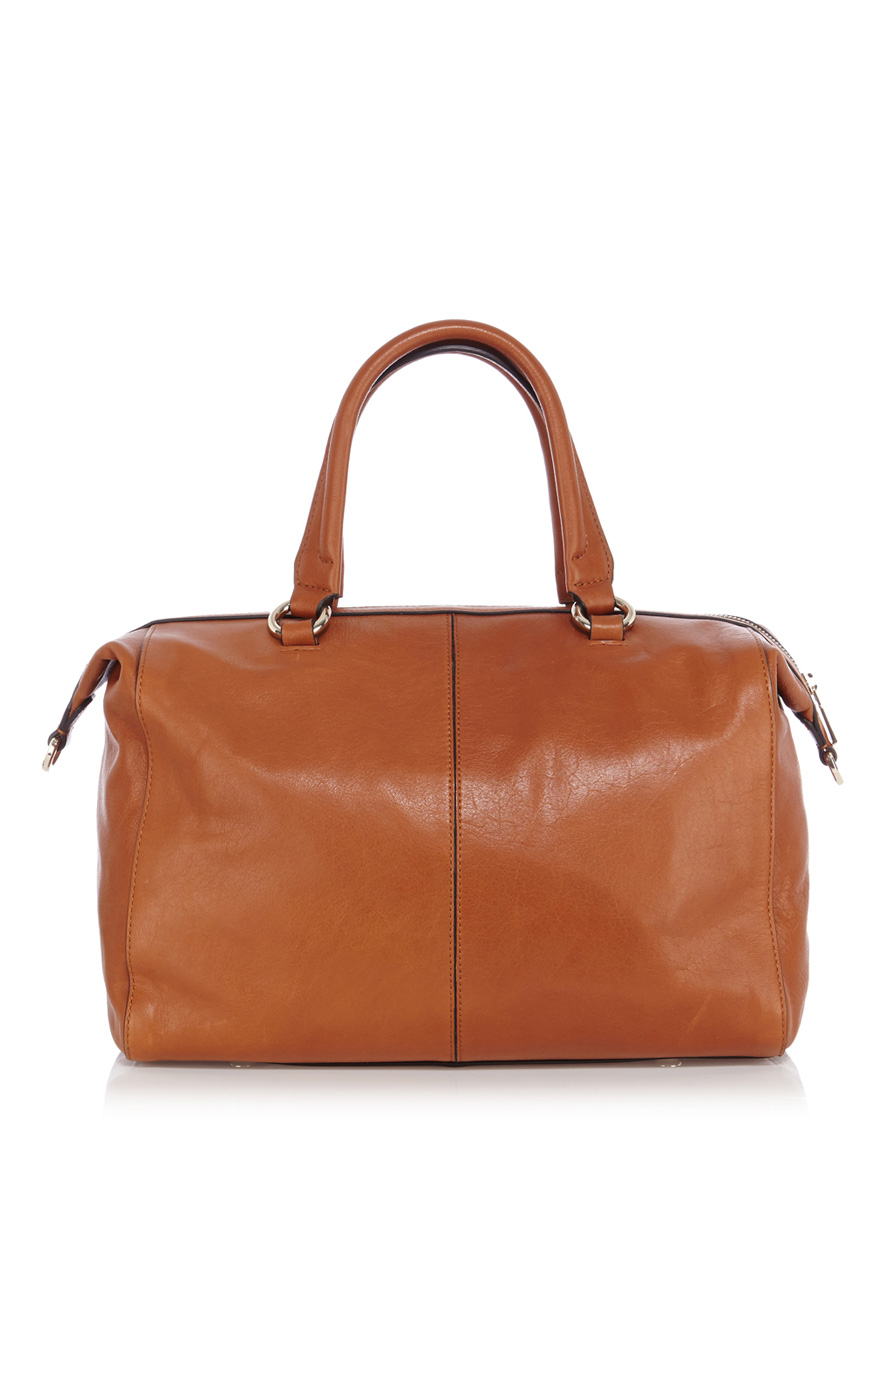 Karen millen Signature Box Bag in Brown | Lyst